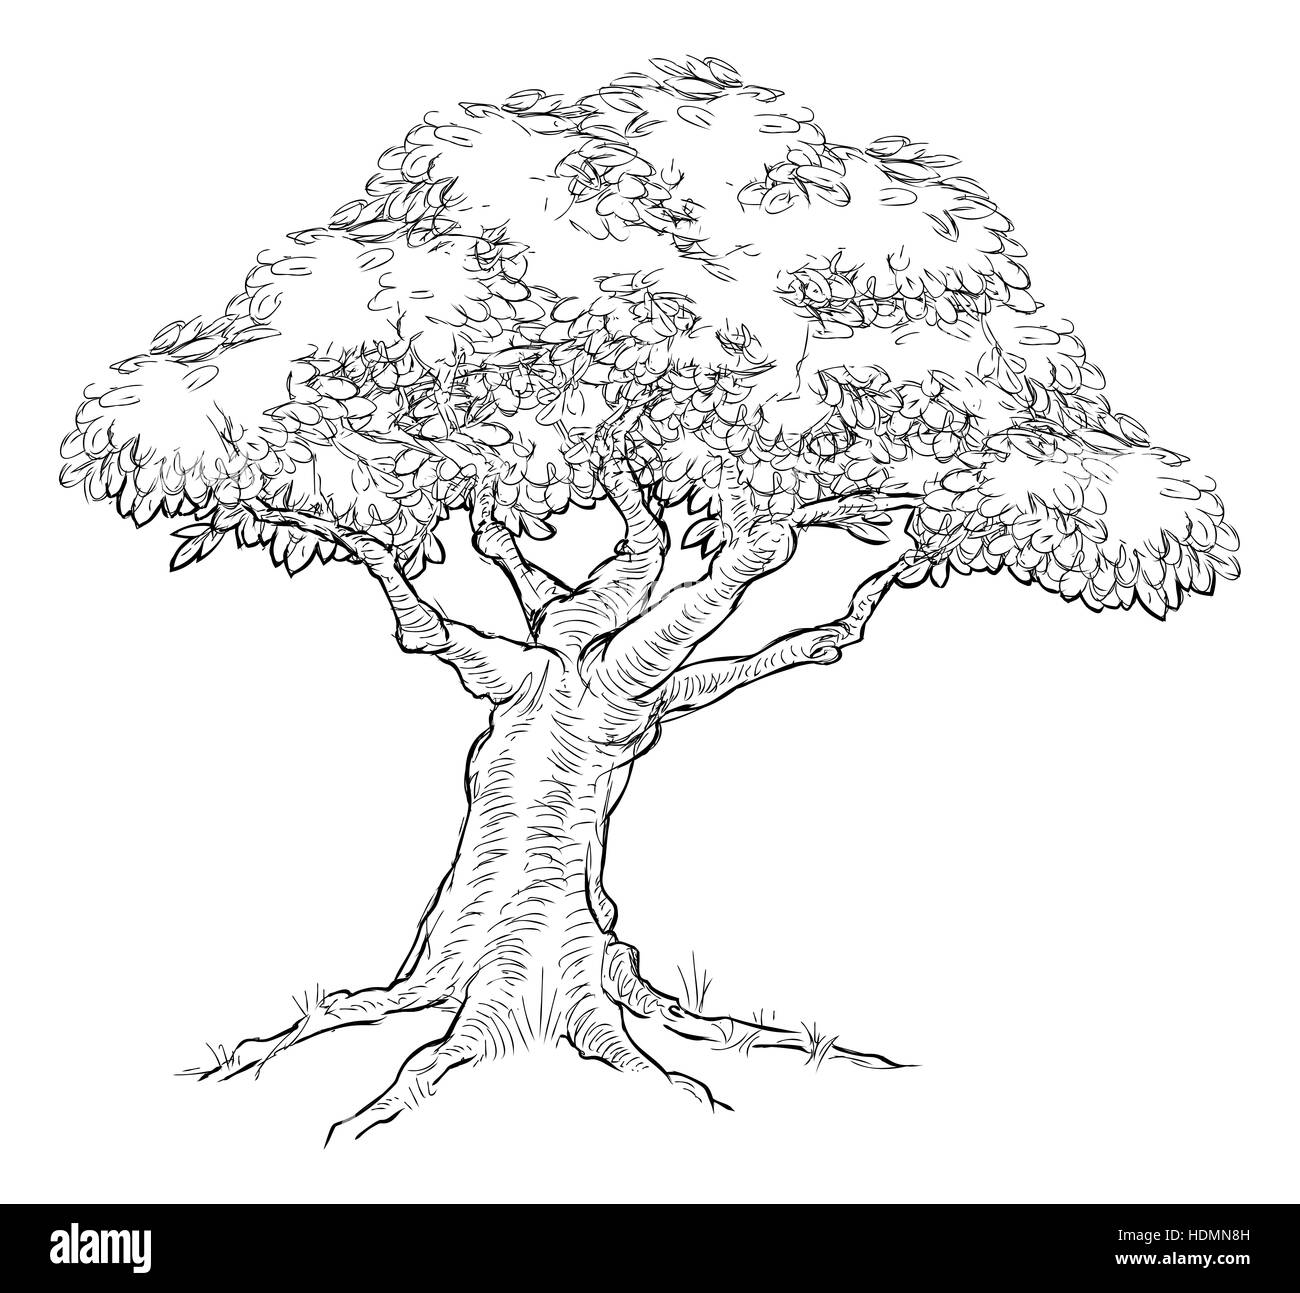 Un arbre de chêne, peut-être, dans un hand drawn vintage style gravé gravé sur bois Banque D'Images